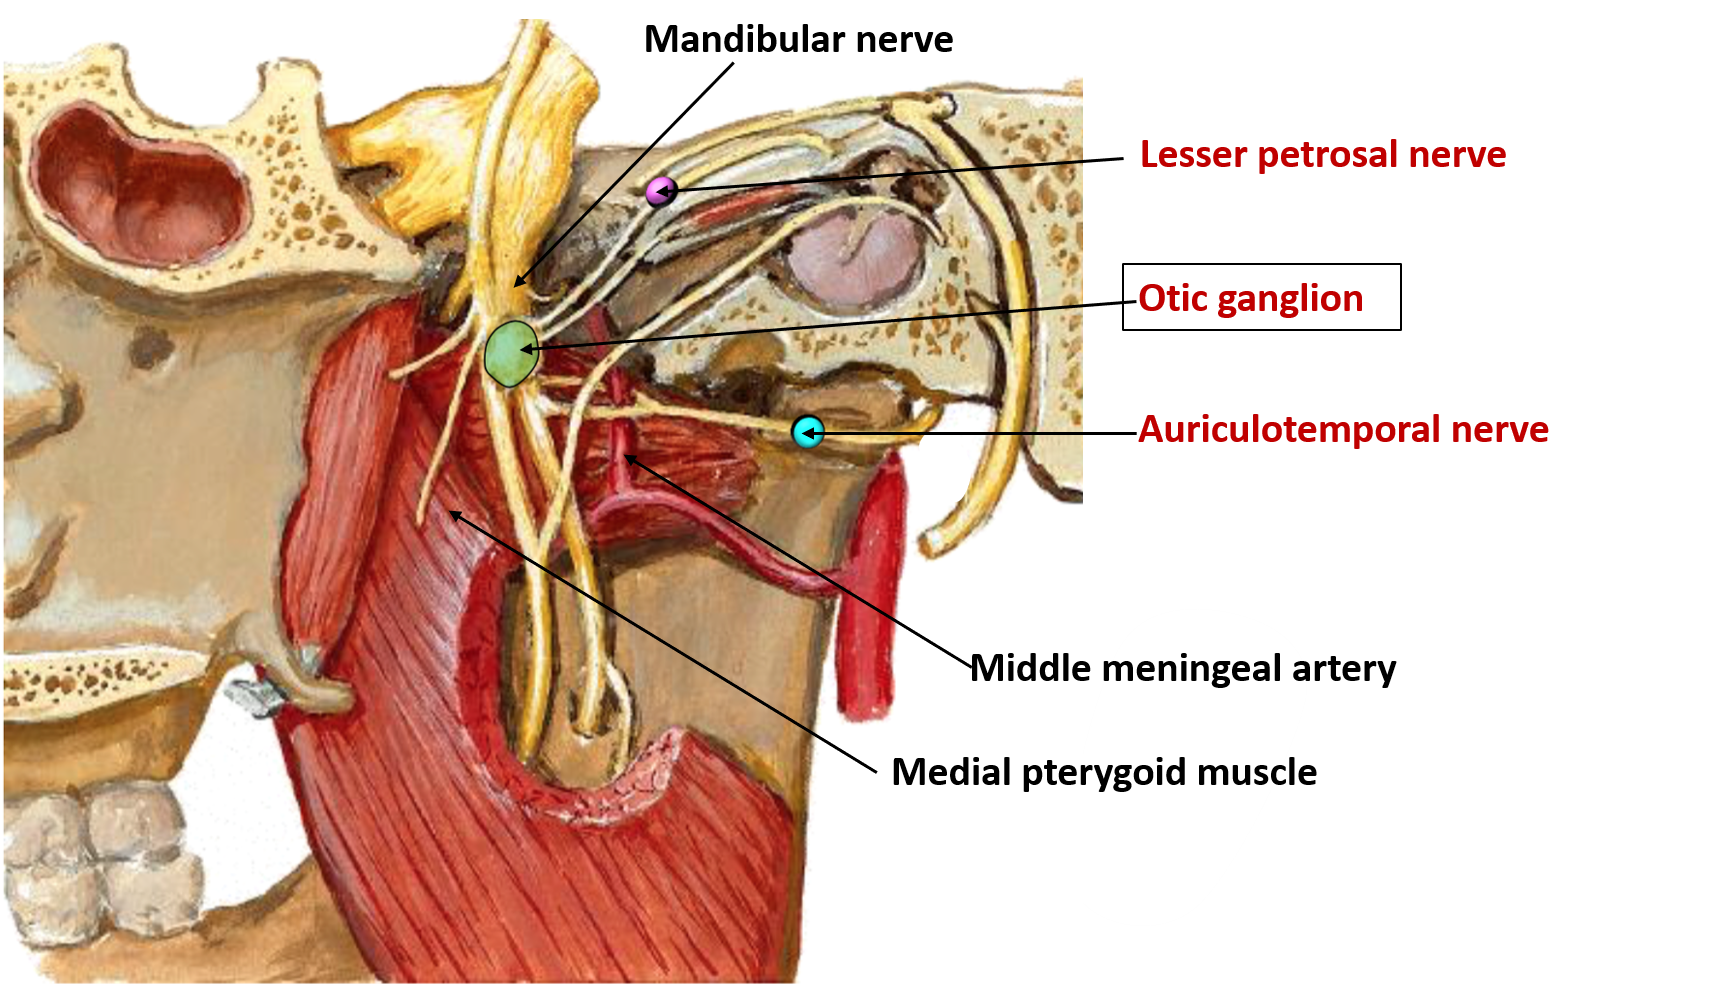 superior cervical ganglion anatomy